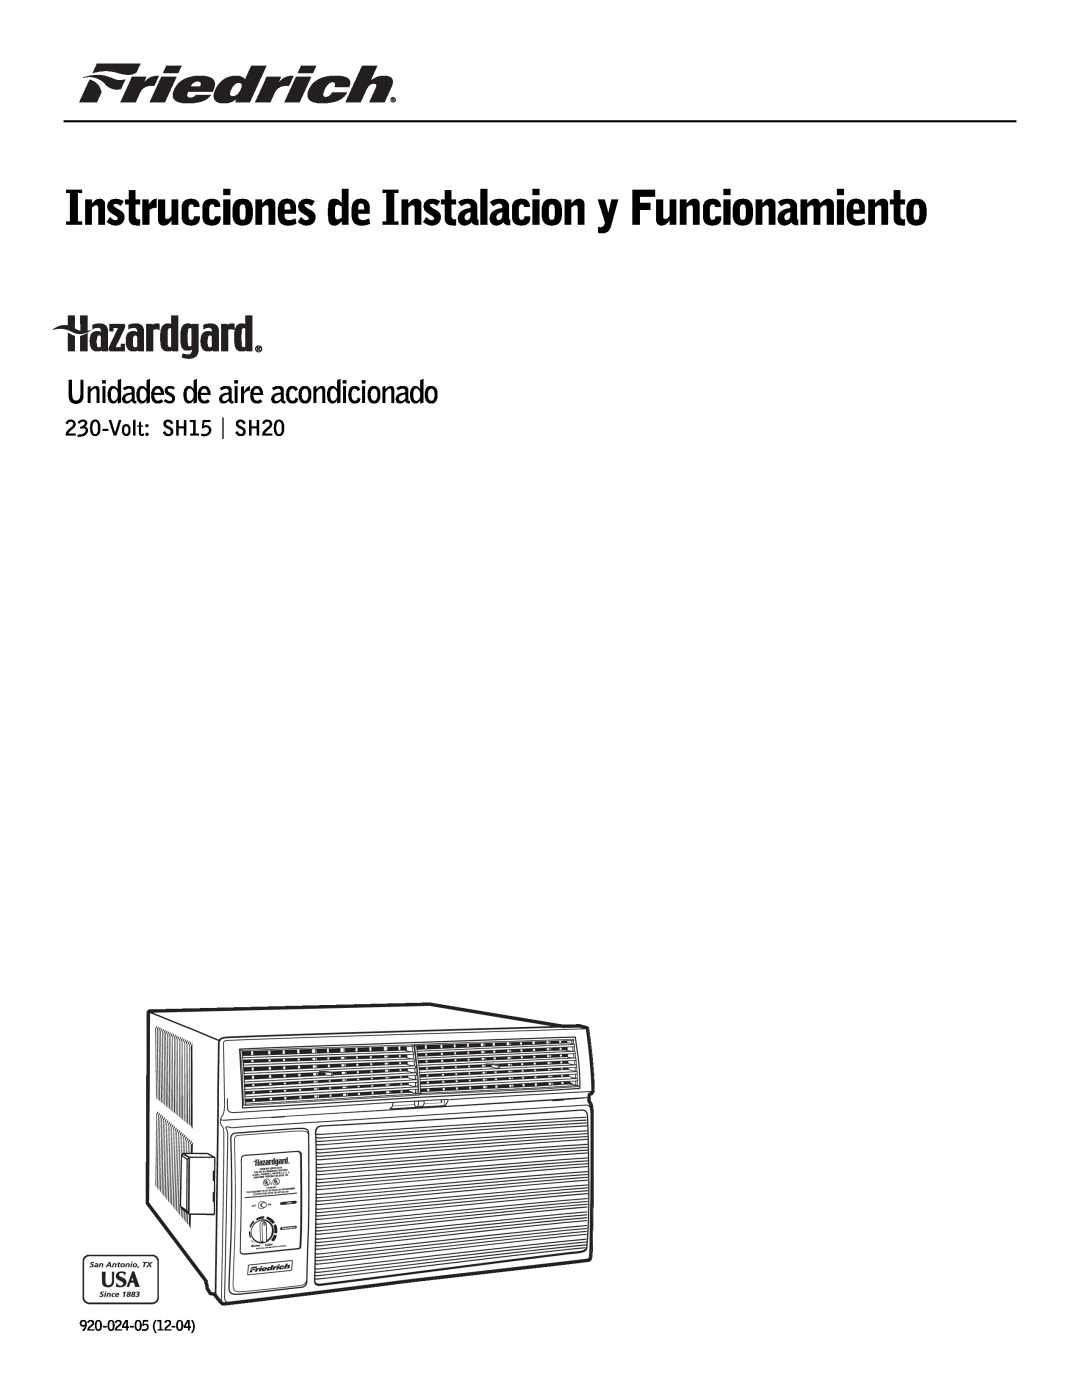 Friedrich Unidades de aire acondicionado, Instrucciones de Instalacion y Funcionamiento, Volt:SH15 | SH20, 920-024-05 